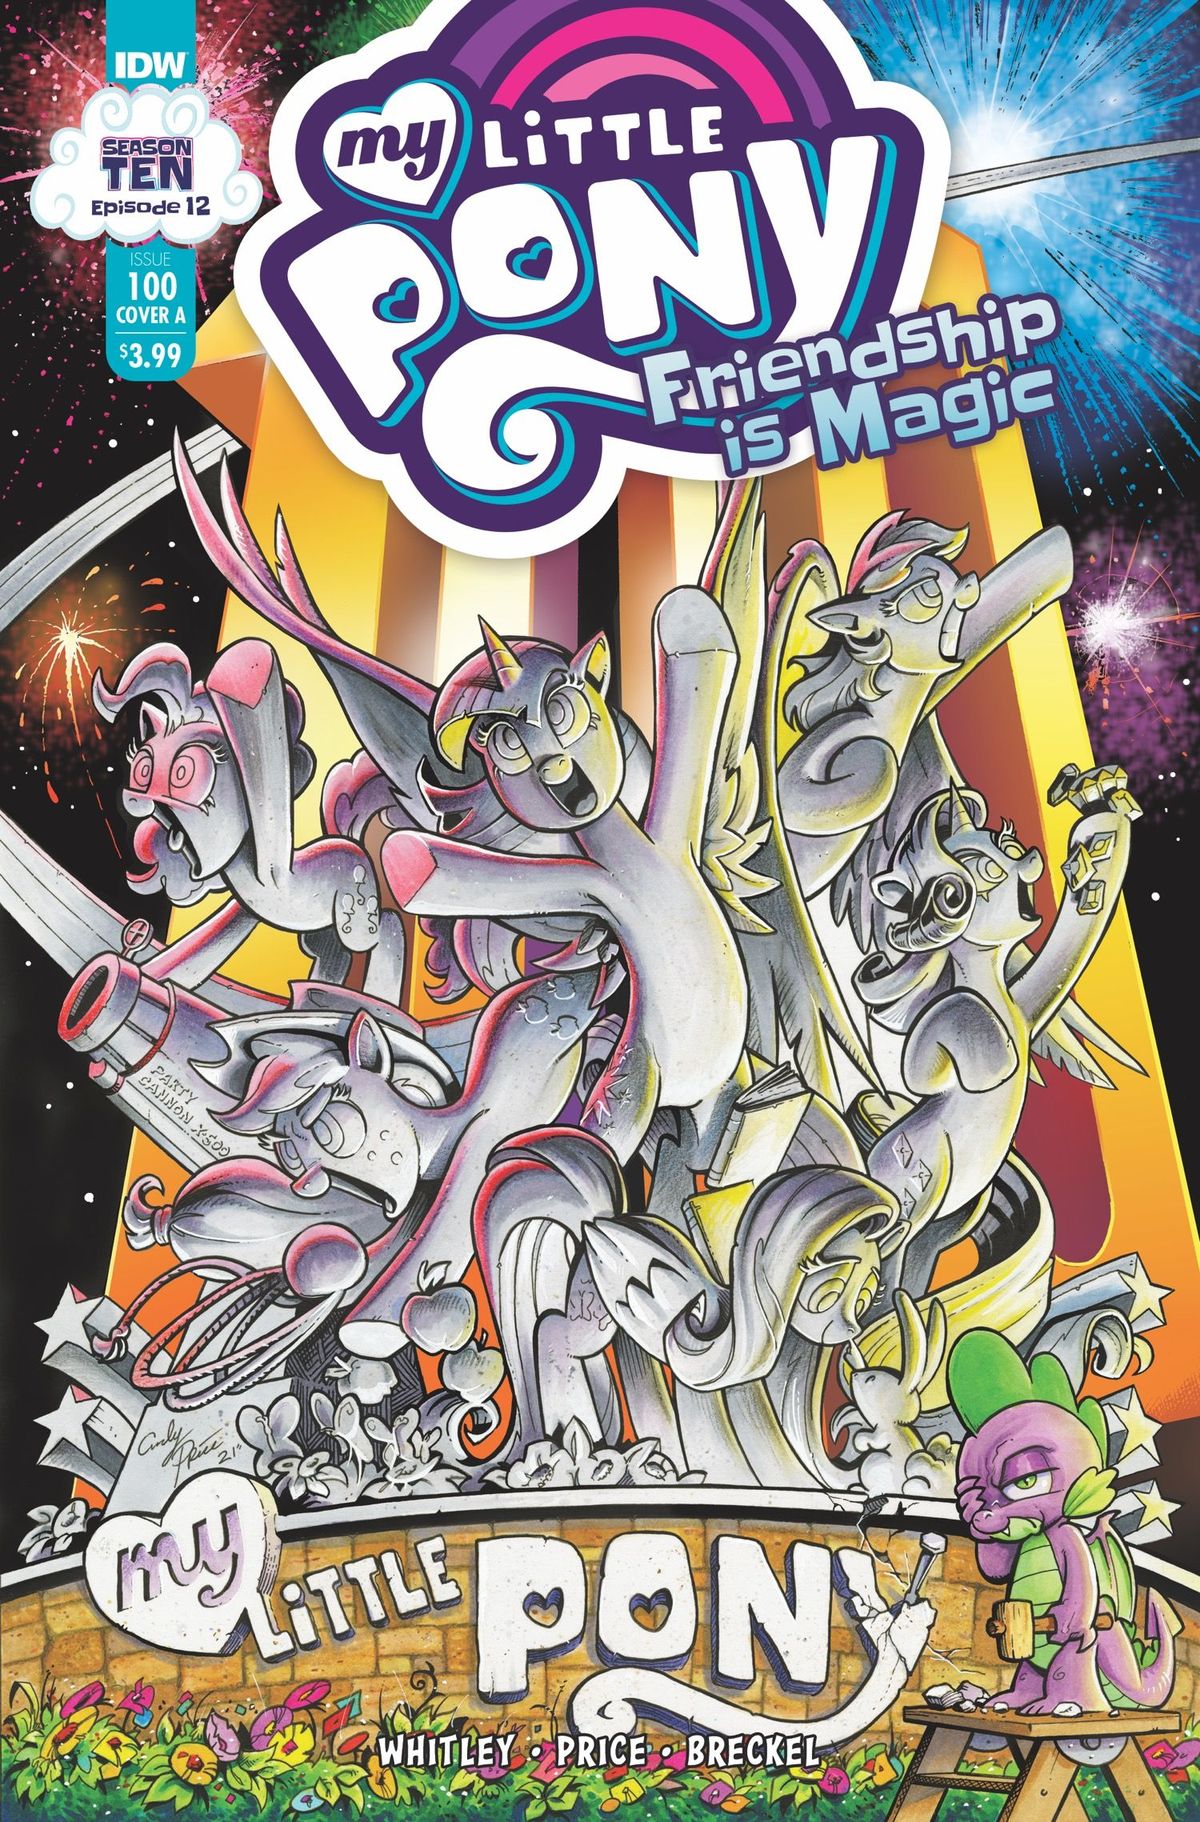 IDW celebra My Little Pony: l'amicizia è il centesimo numero di Magic (Esclusivo)